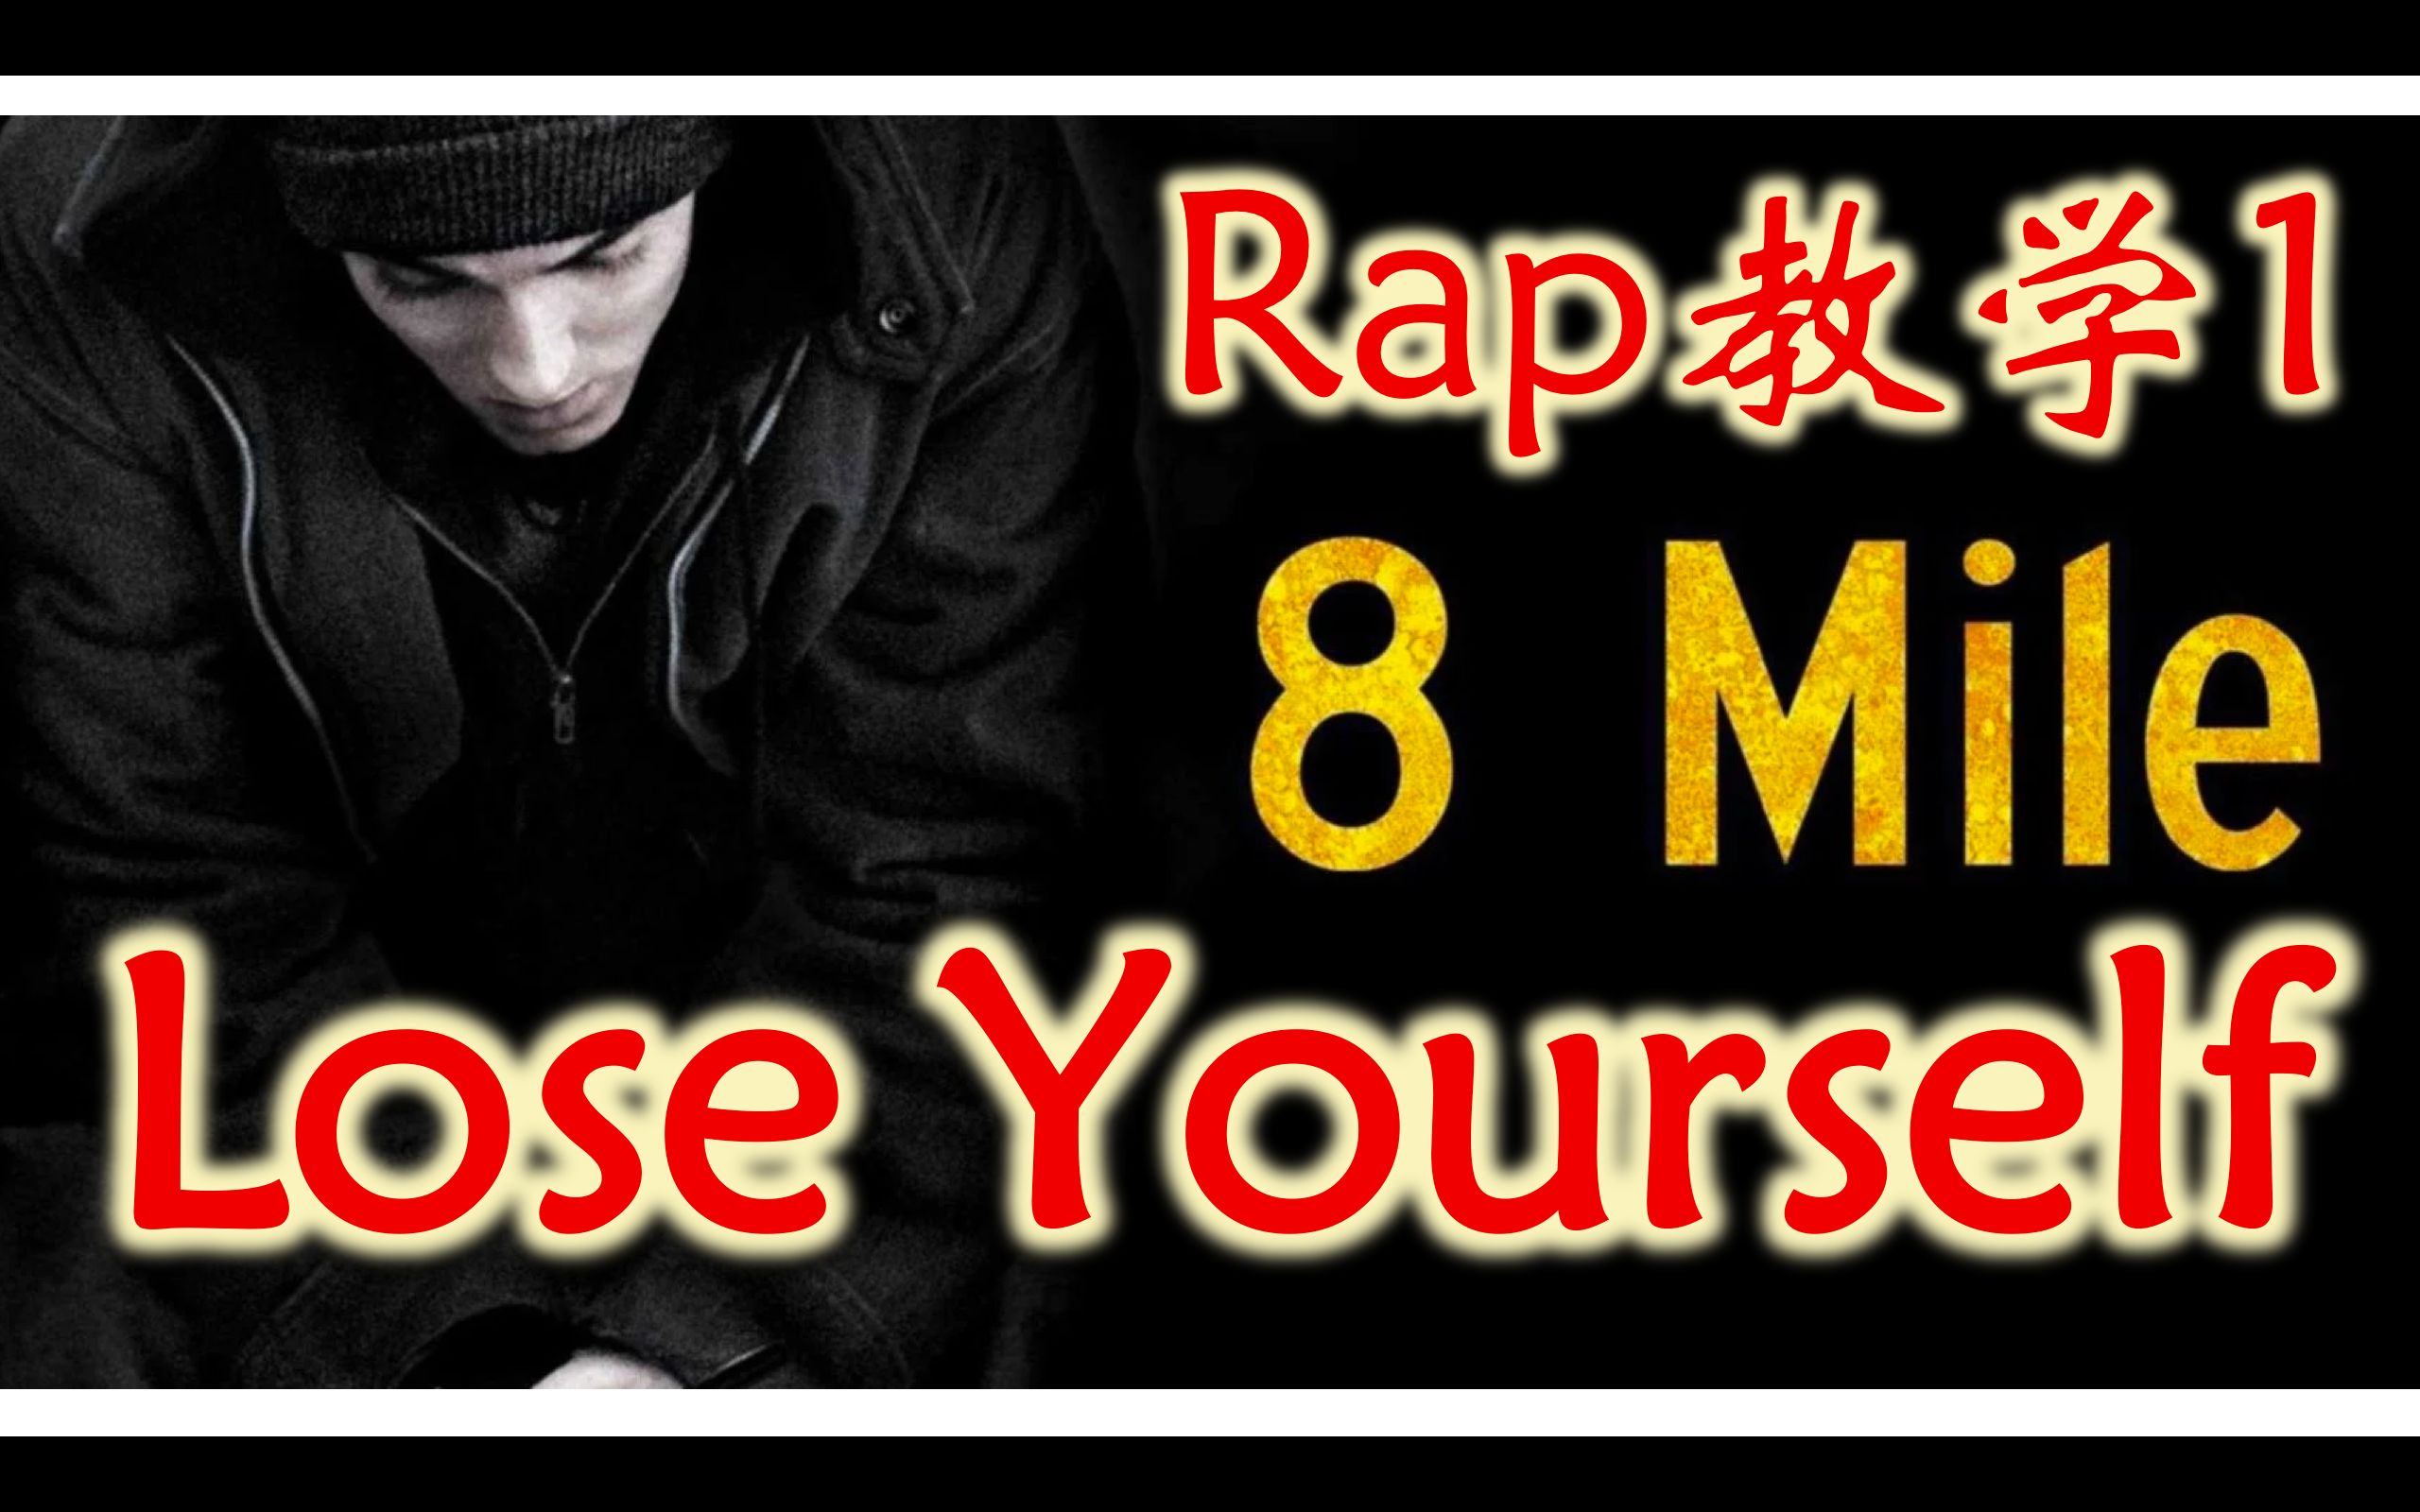 【姆爷Rap教学】Lose Yourself Verse 1 说唱教学 逐句攻破 保姆级教程 看完就会唱 唱歌学英语发音口语 阿姆 Eminem